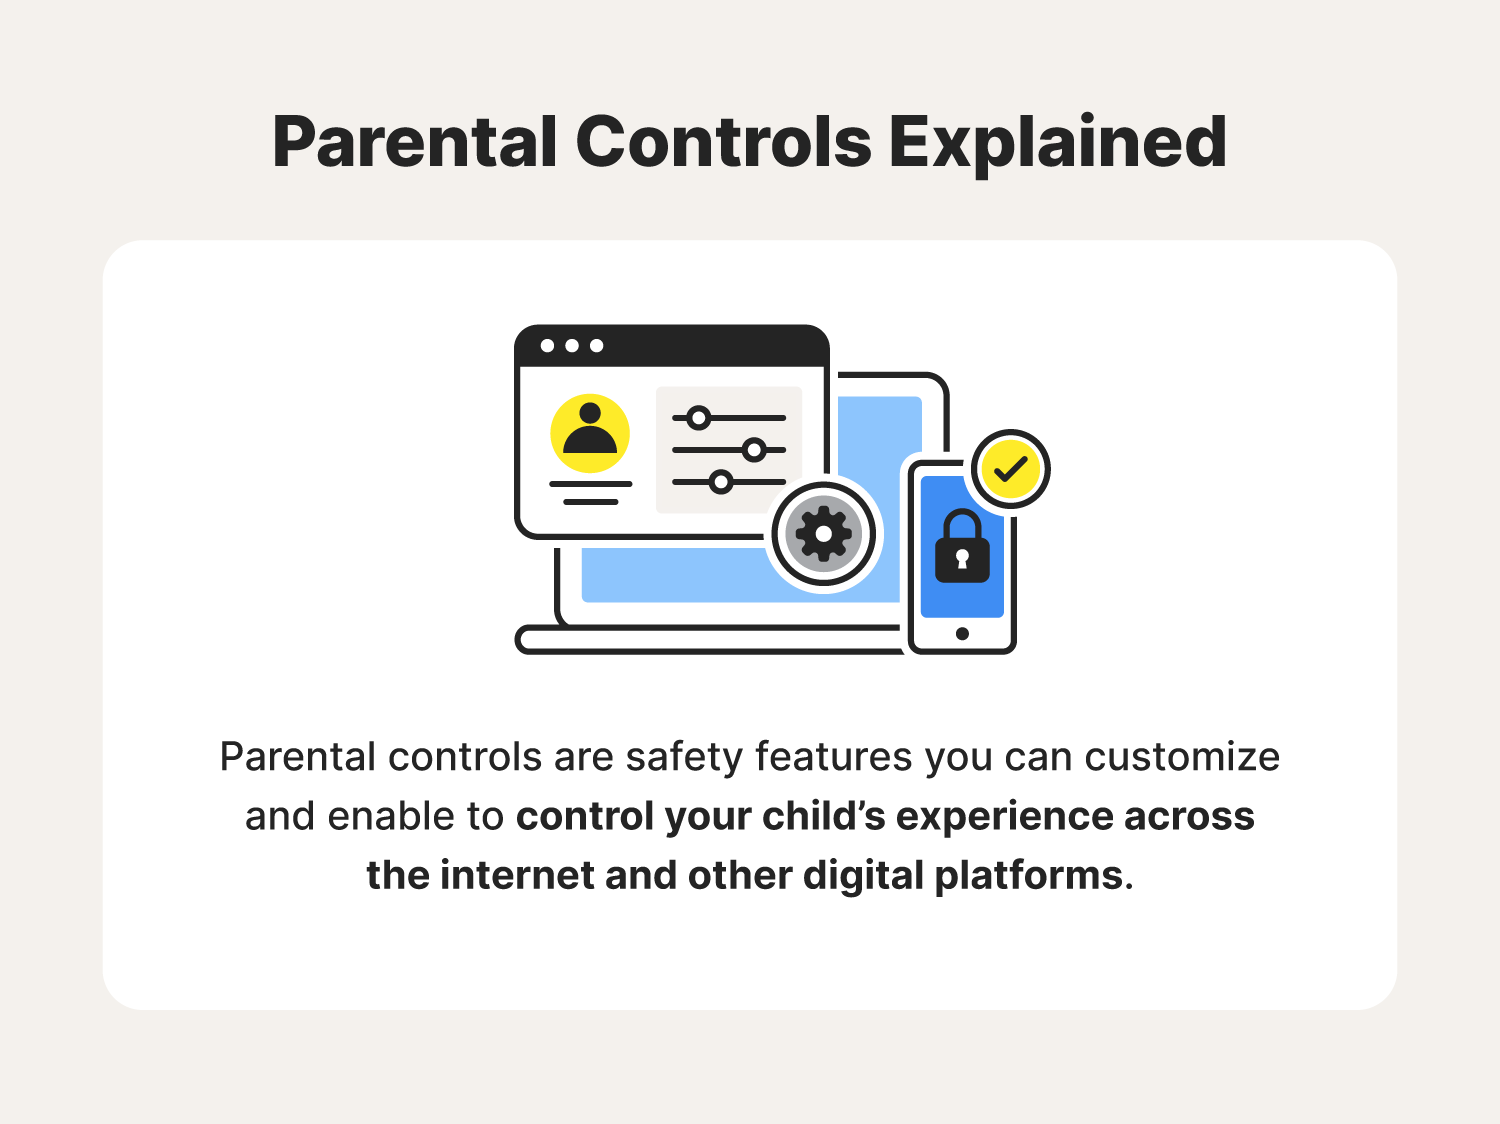 Parental controls explained